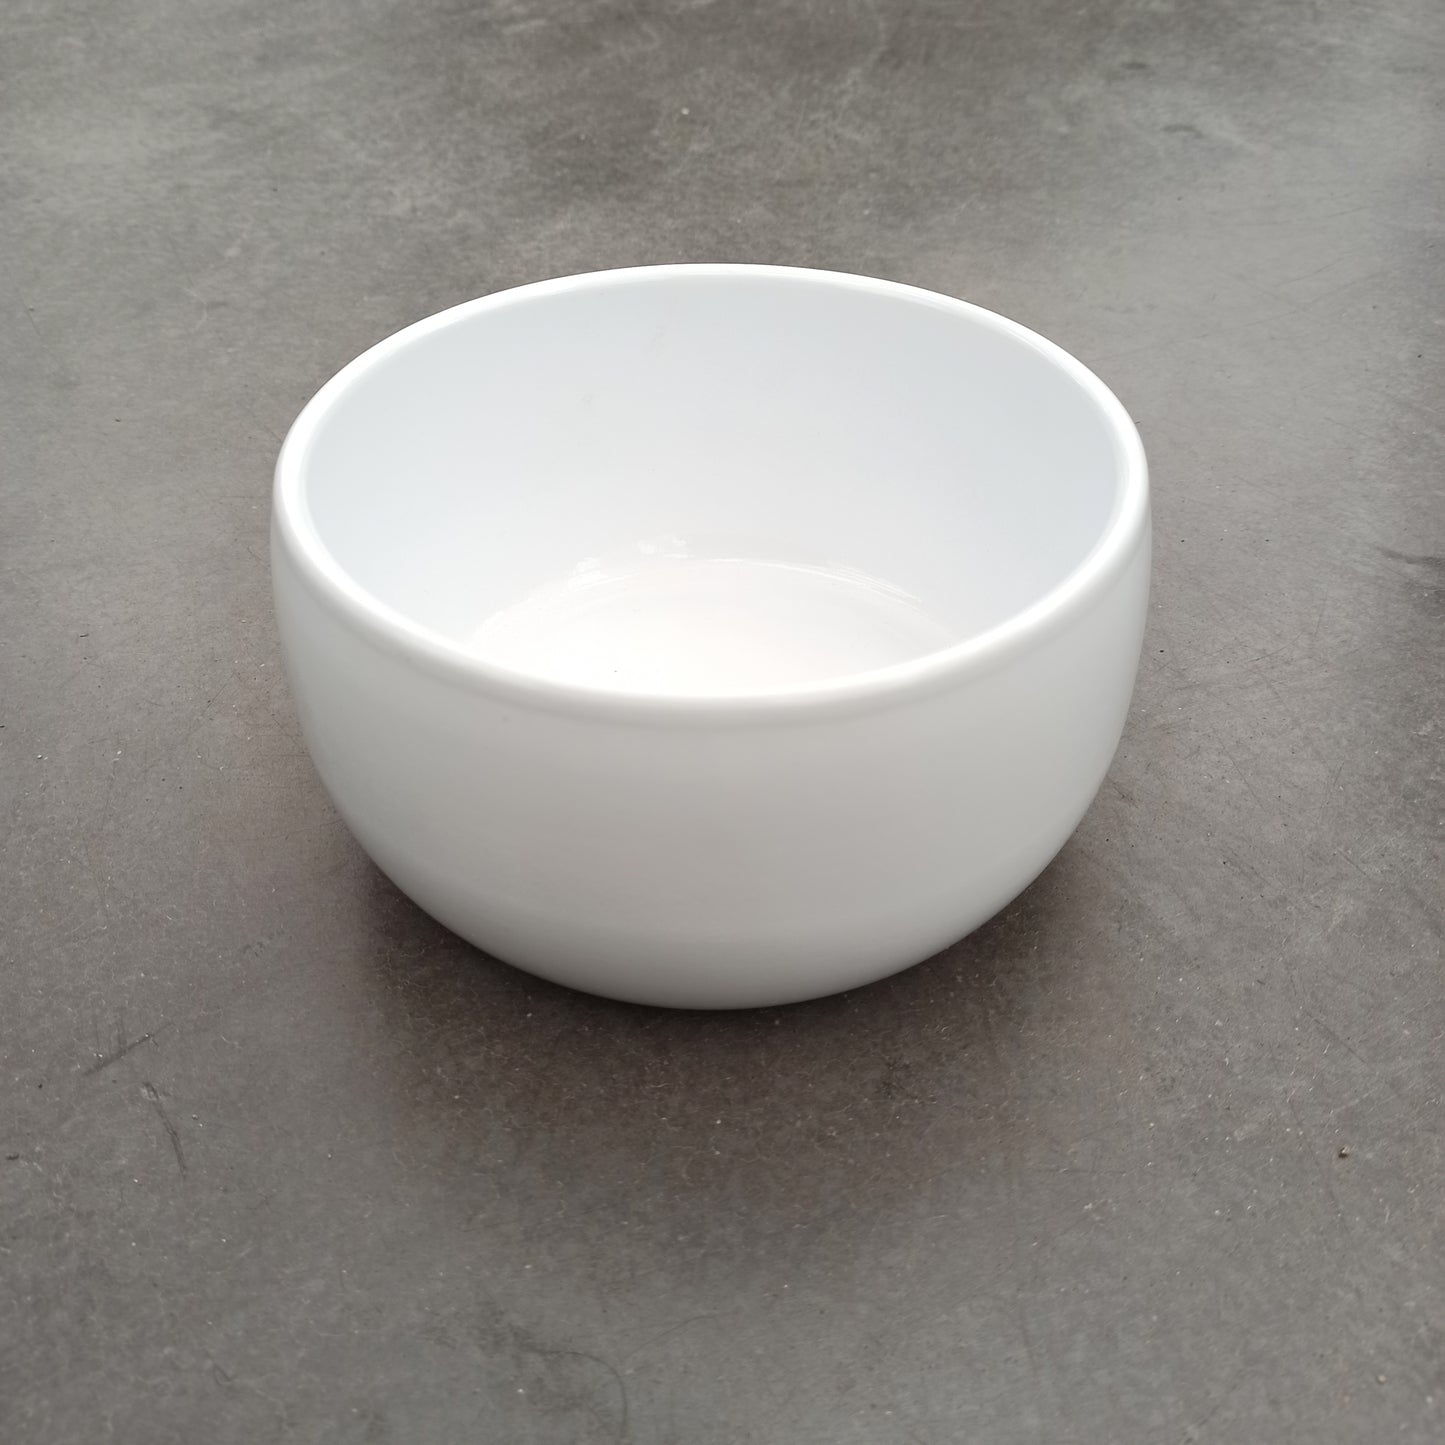 Ceramic truus white 17 x 8 cm